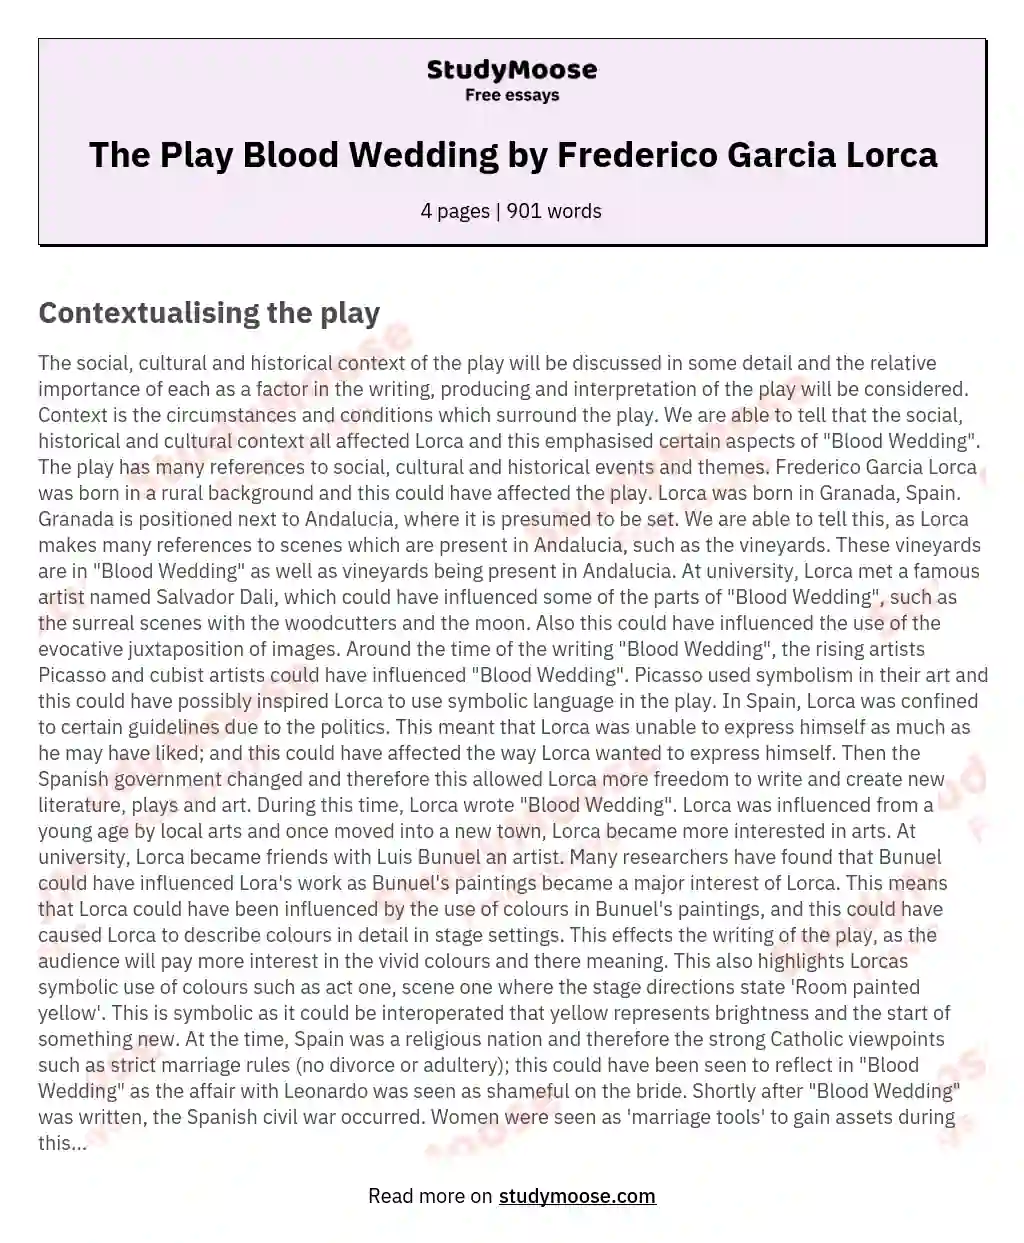 The Play Blood Wedding by Frederico Garcia Lorca essay